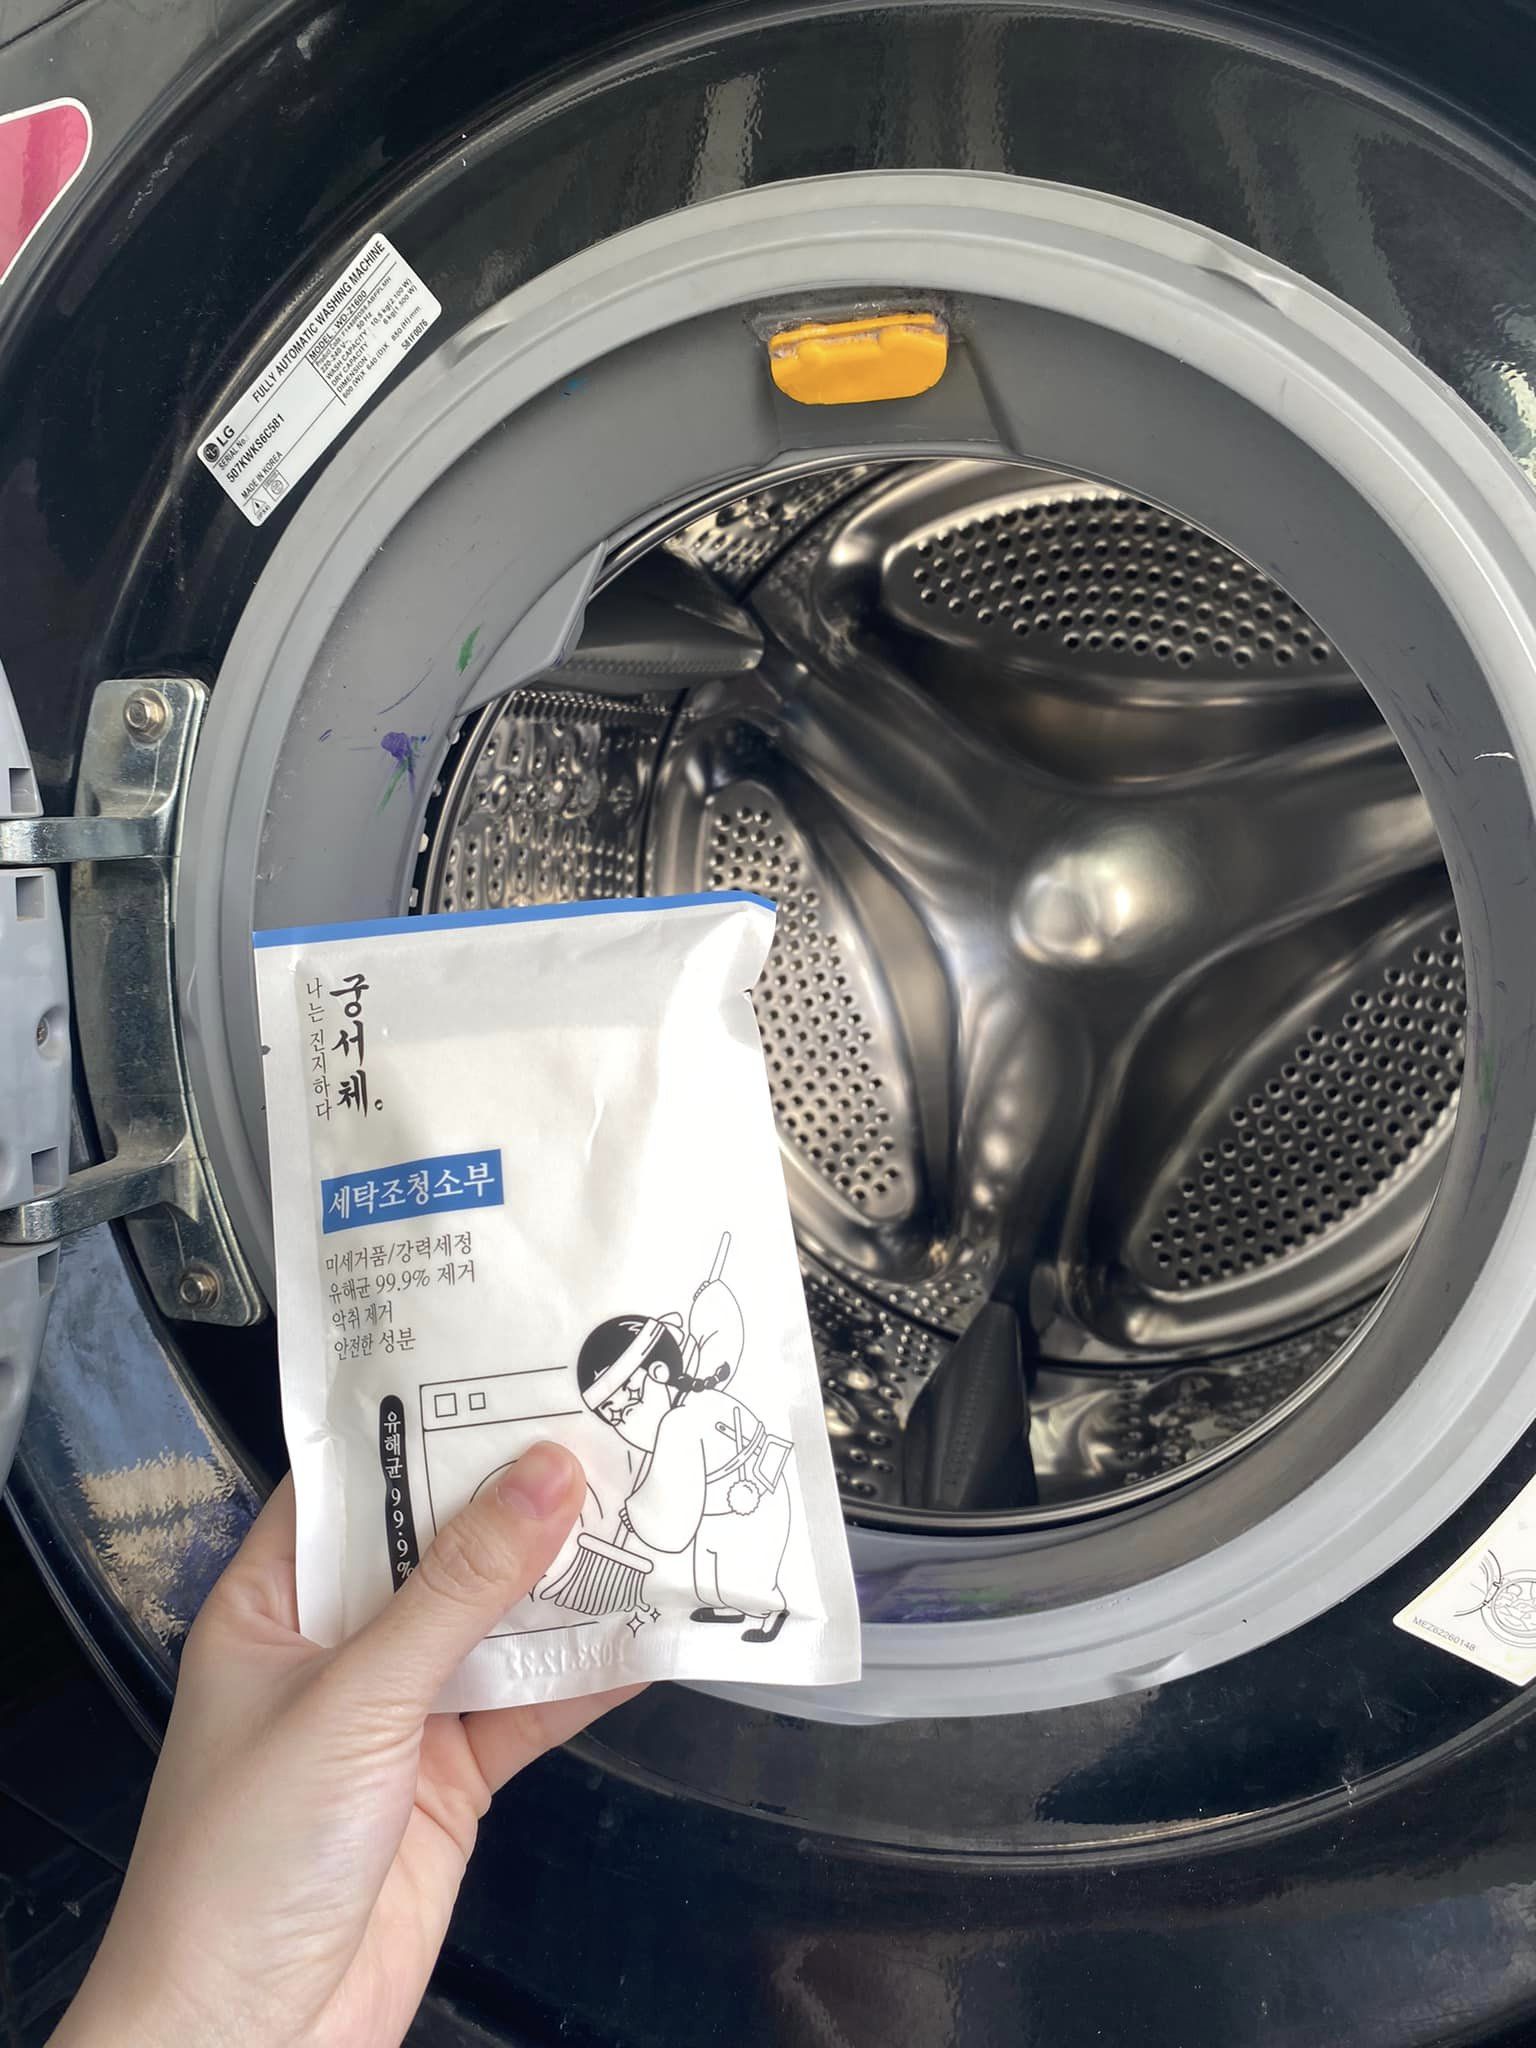 Cách dùng bột tẩy lồng giặt chuyên dụng nhập khẩu Hàn Quốc